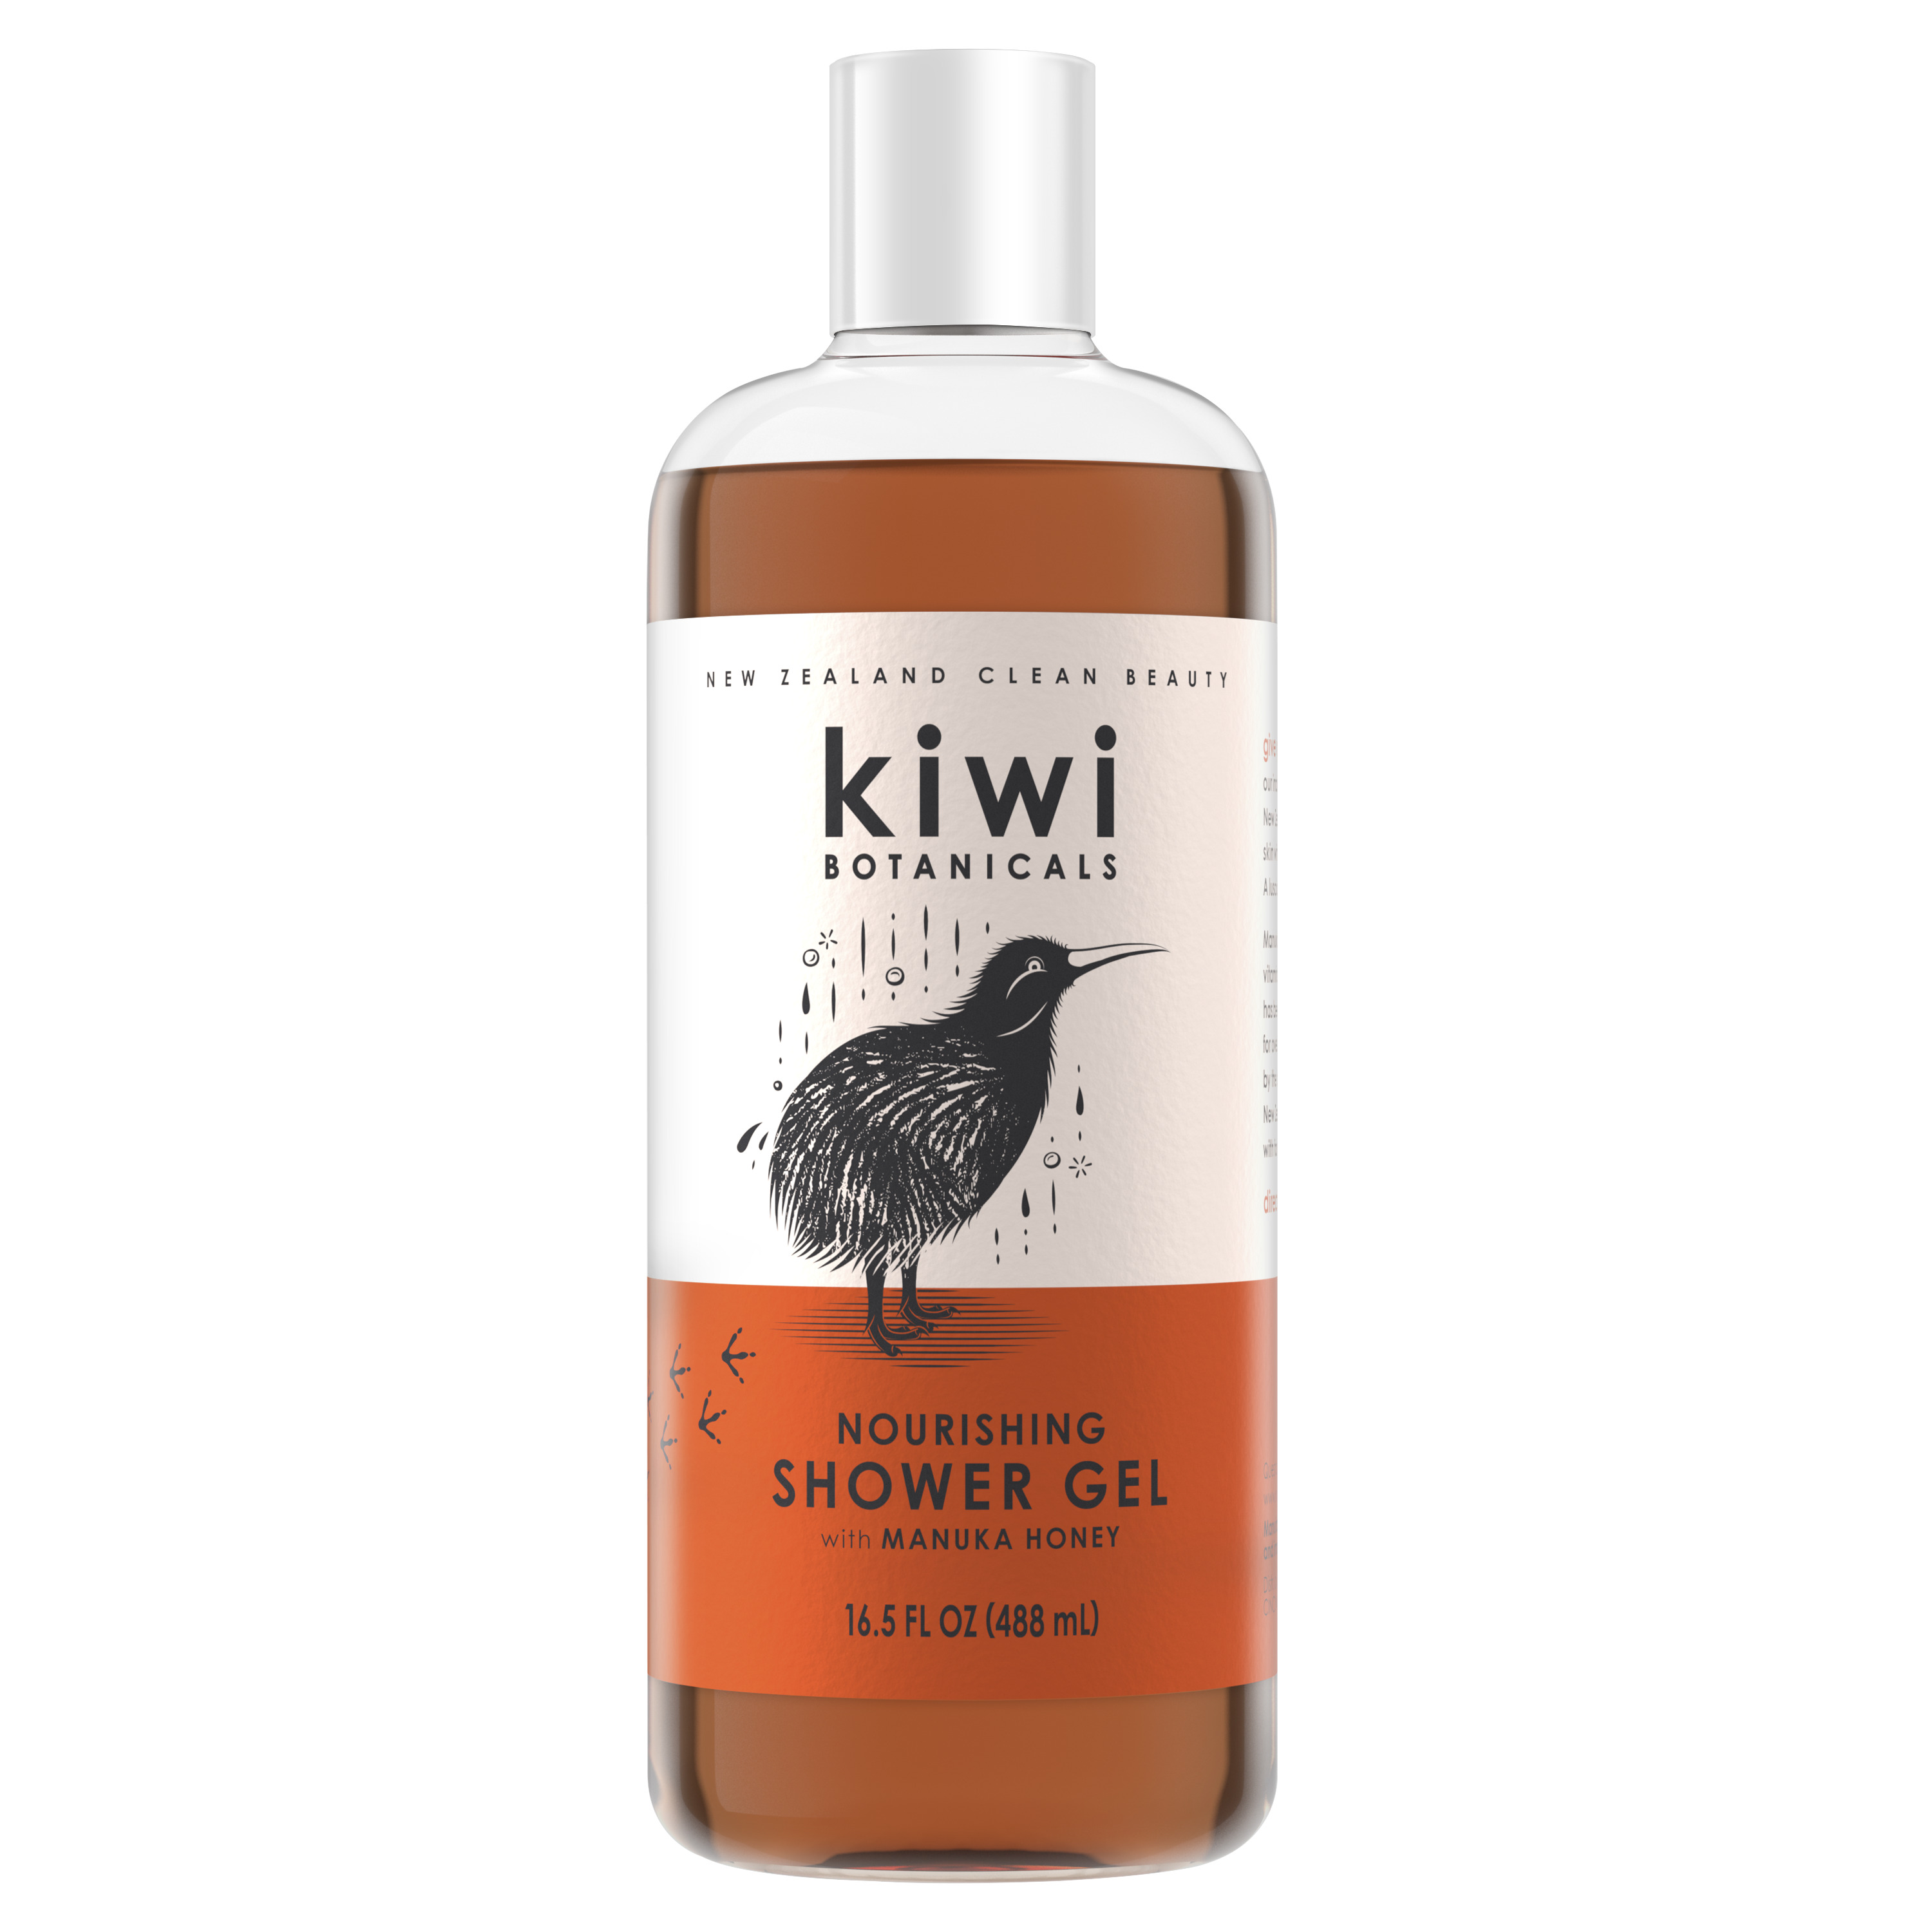 Kiwi Botanicals Nourishing Shower Gel, Manuka Honey, 16.5 fl oz - image 1 of 7